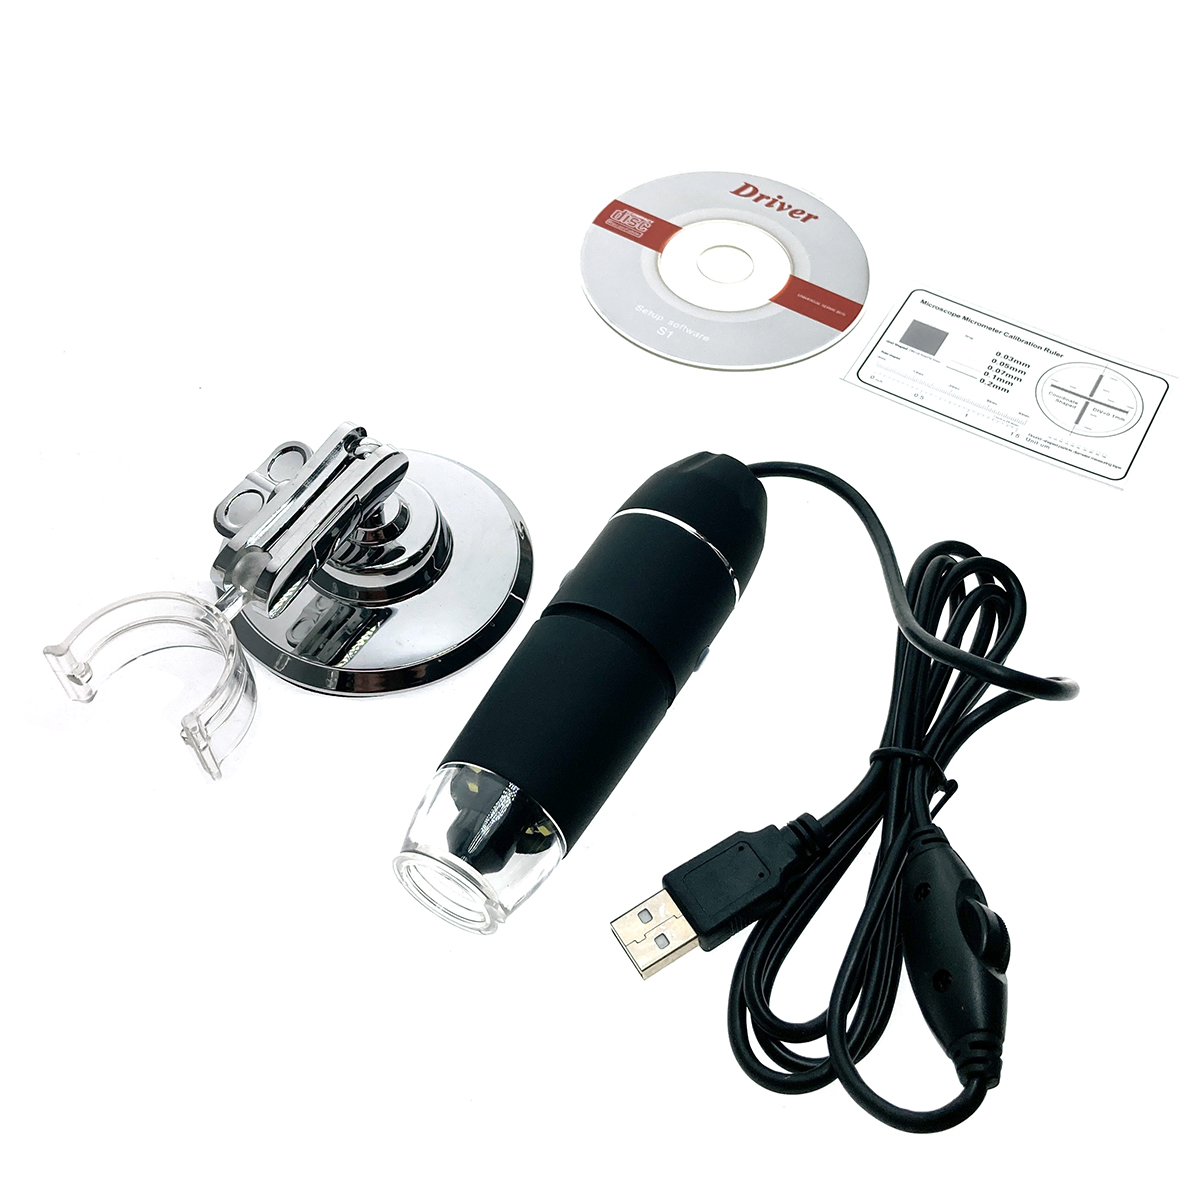 Портативный цифровой USB-микроскоп Espada E-UM21600X c камерой 2.0 МП и увеличением 1600x